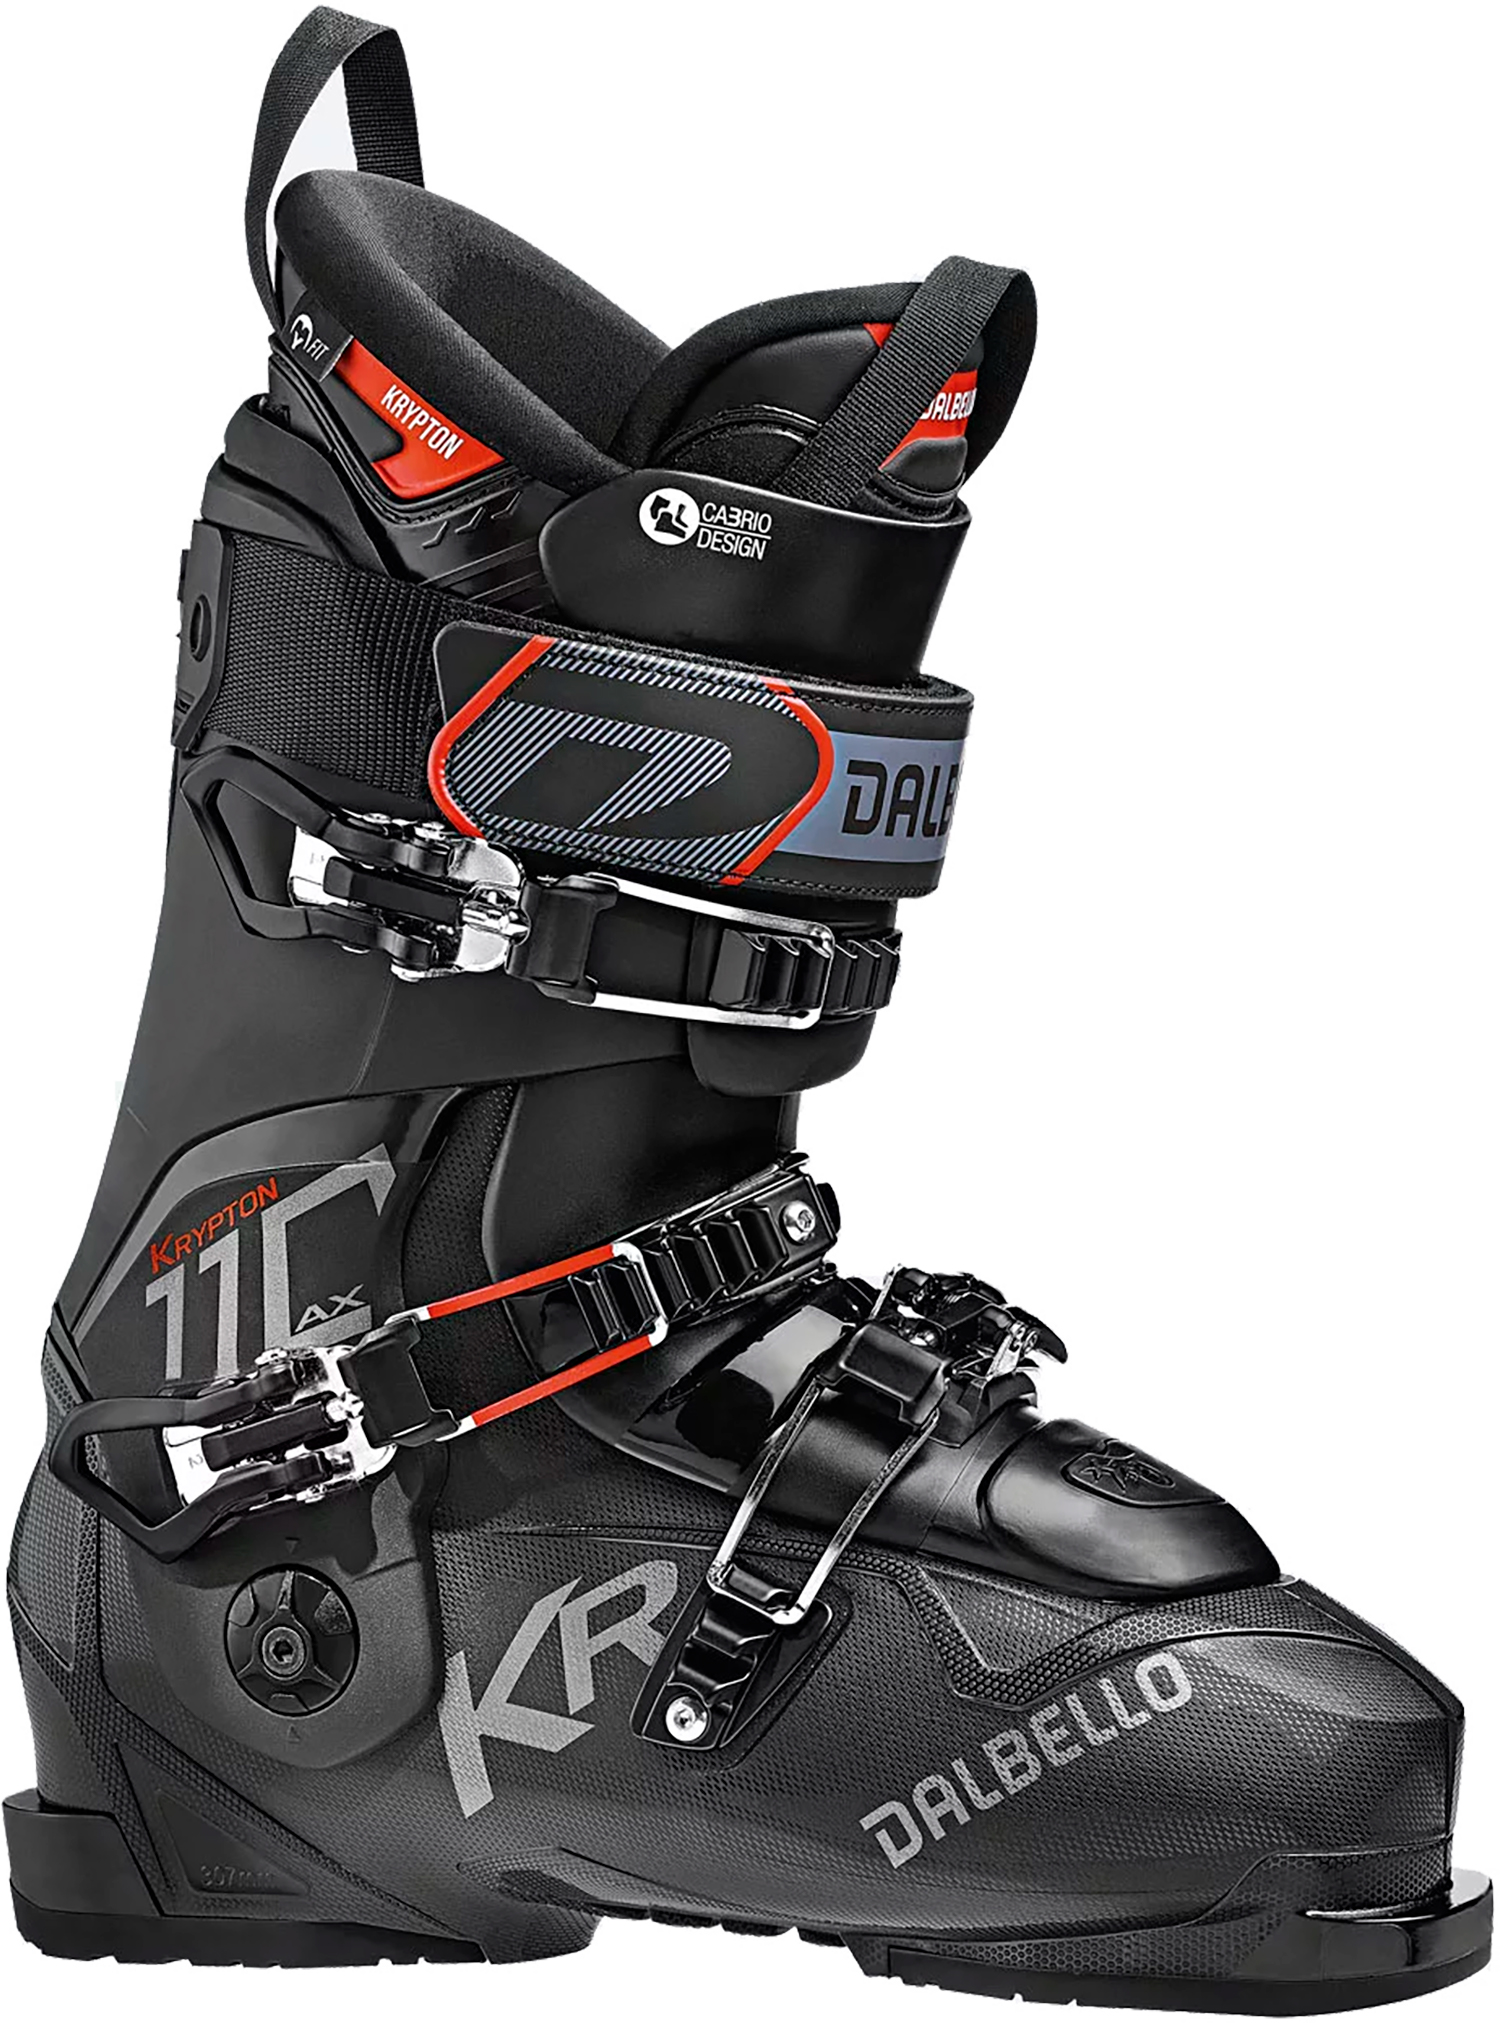 Лыжные ботинки для фрирайда Dalbello Krypton AX 110 Black (265)